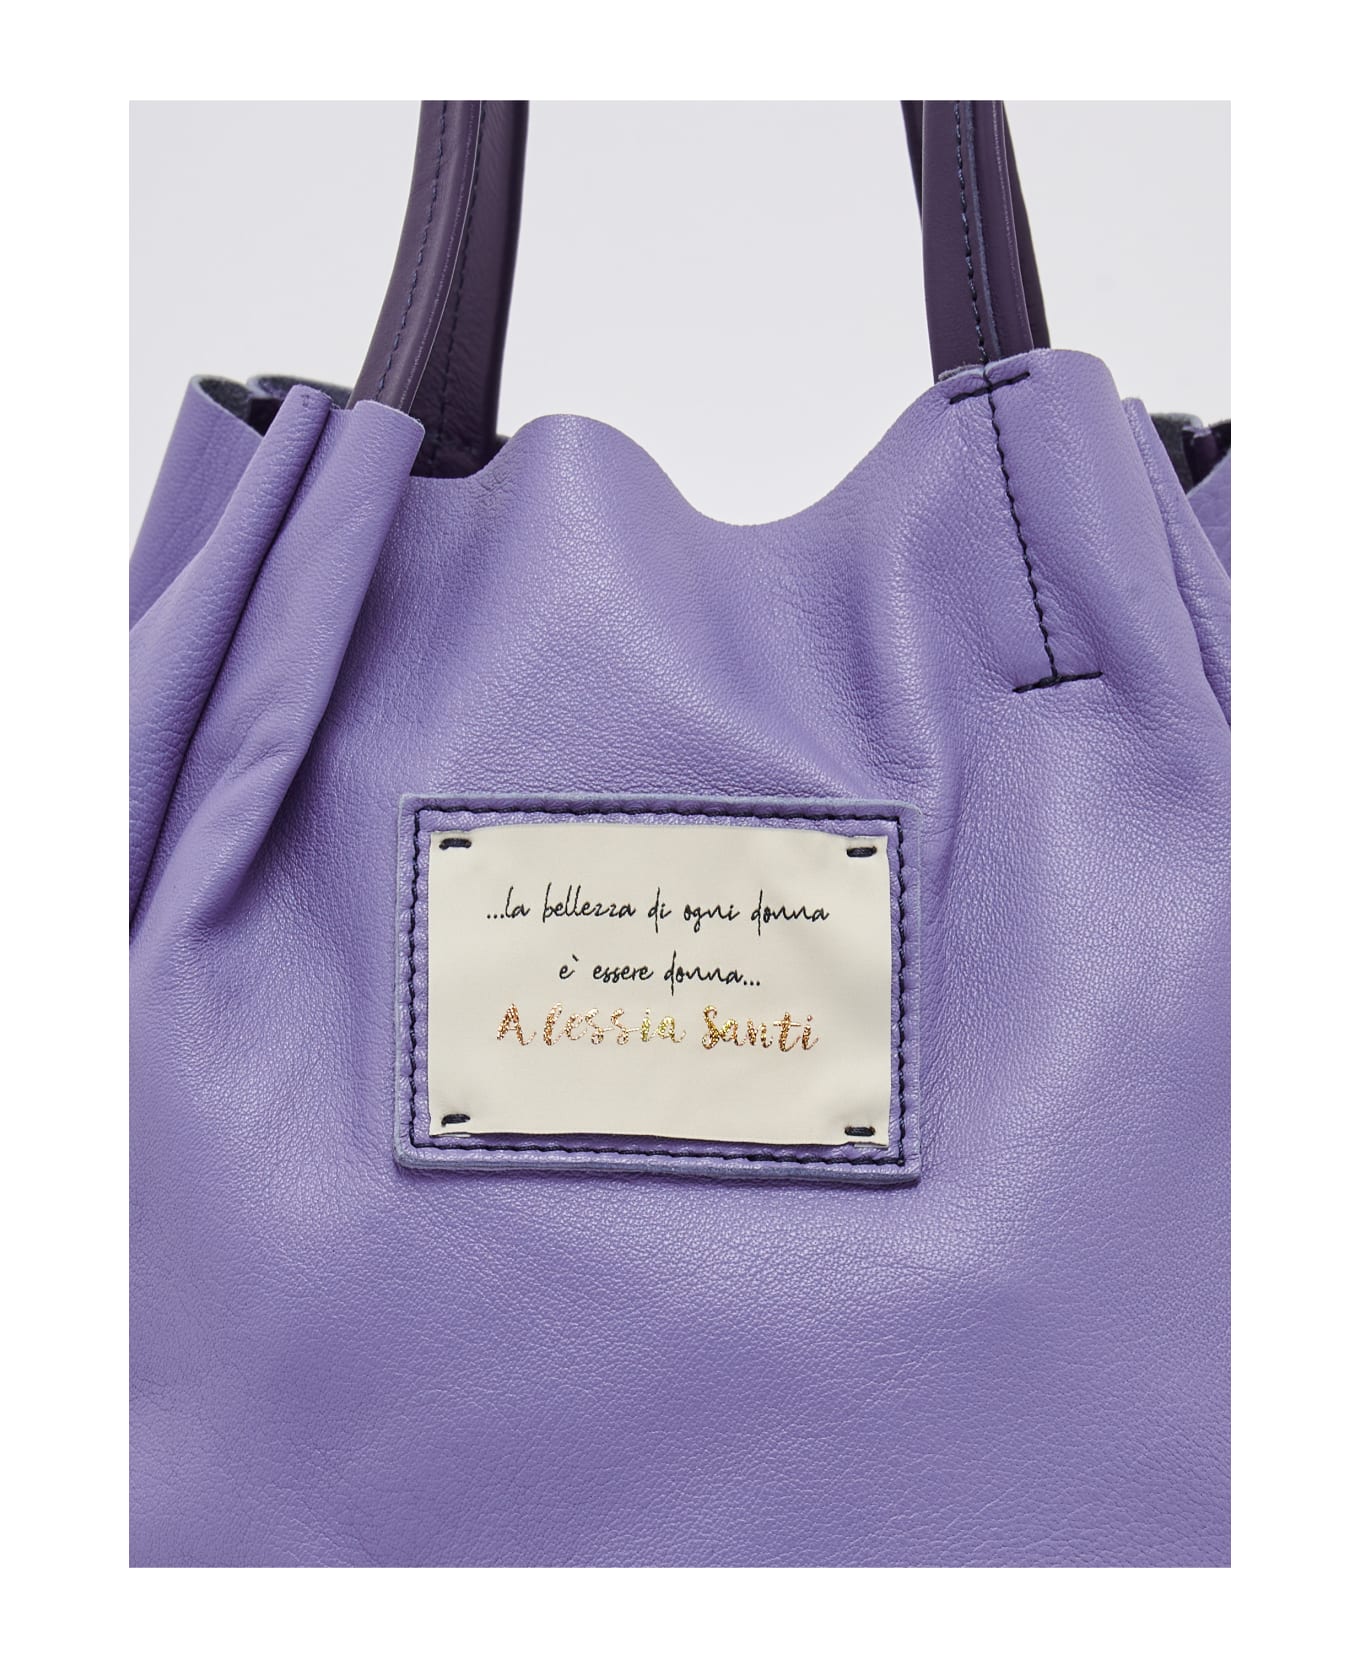 Alessia Santi Poliuretano Shopping Bag - FIORDALISO